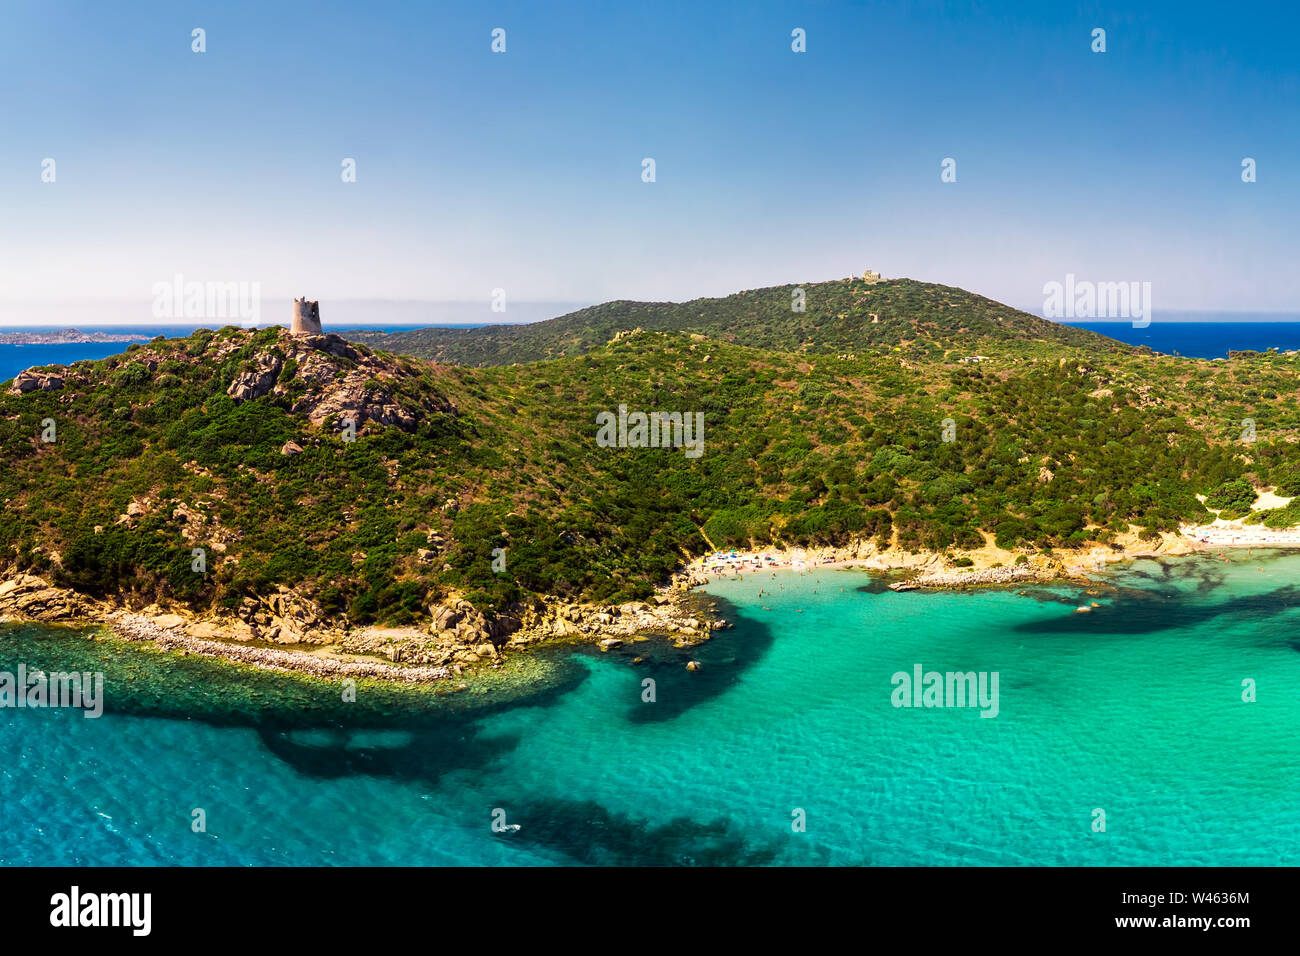 Playa Porto Giunco, Villasimius, Cerdeña, Italia. Cerdeña es la segunda isla más grande del Mar Mediterráneo. Foto de stock